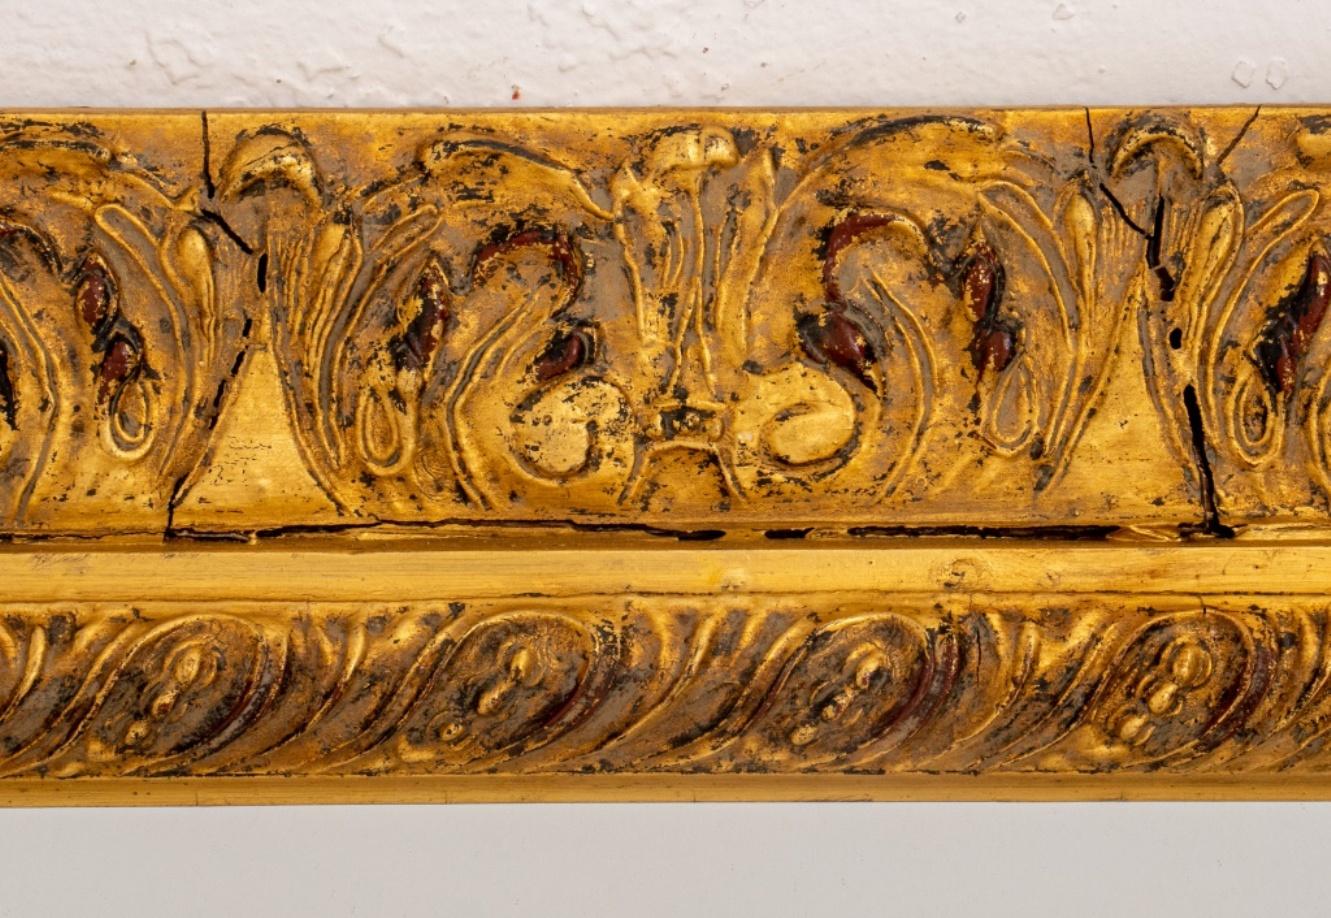 Miroir de cheminée en bois doré sculpté de style baroque avec motif de feuilles d'acanthe. En bon état. Usure conforme à l'âge et à l'utilisation.

Dimensions : 34,5